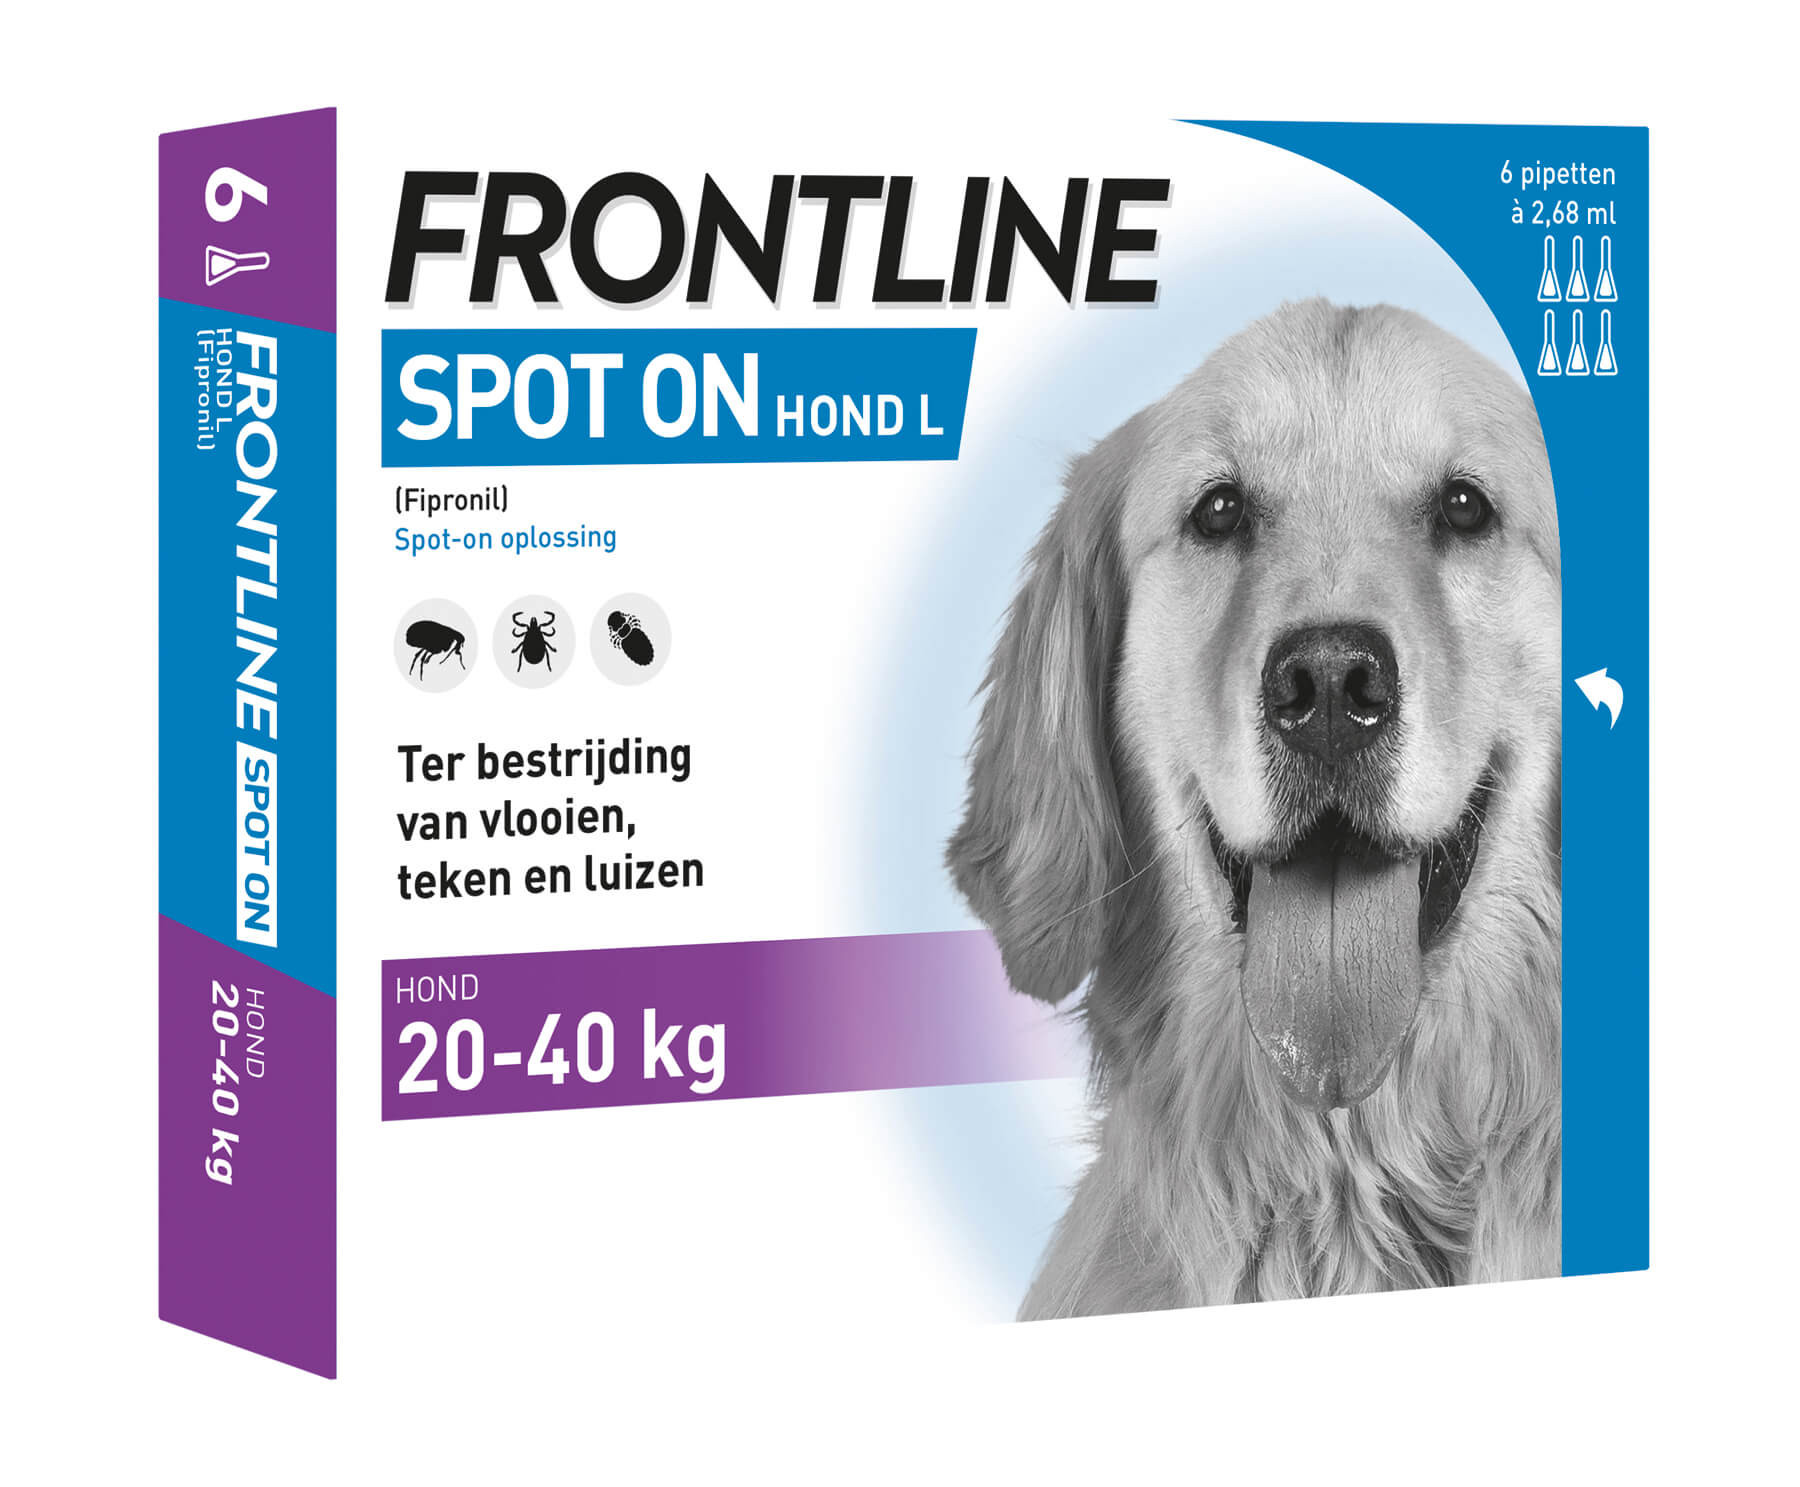 Afbeelding Frontline Spot on Hond L 6 pipetten door Brekz.nl